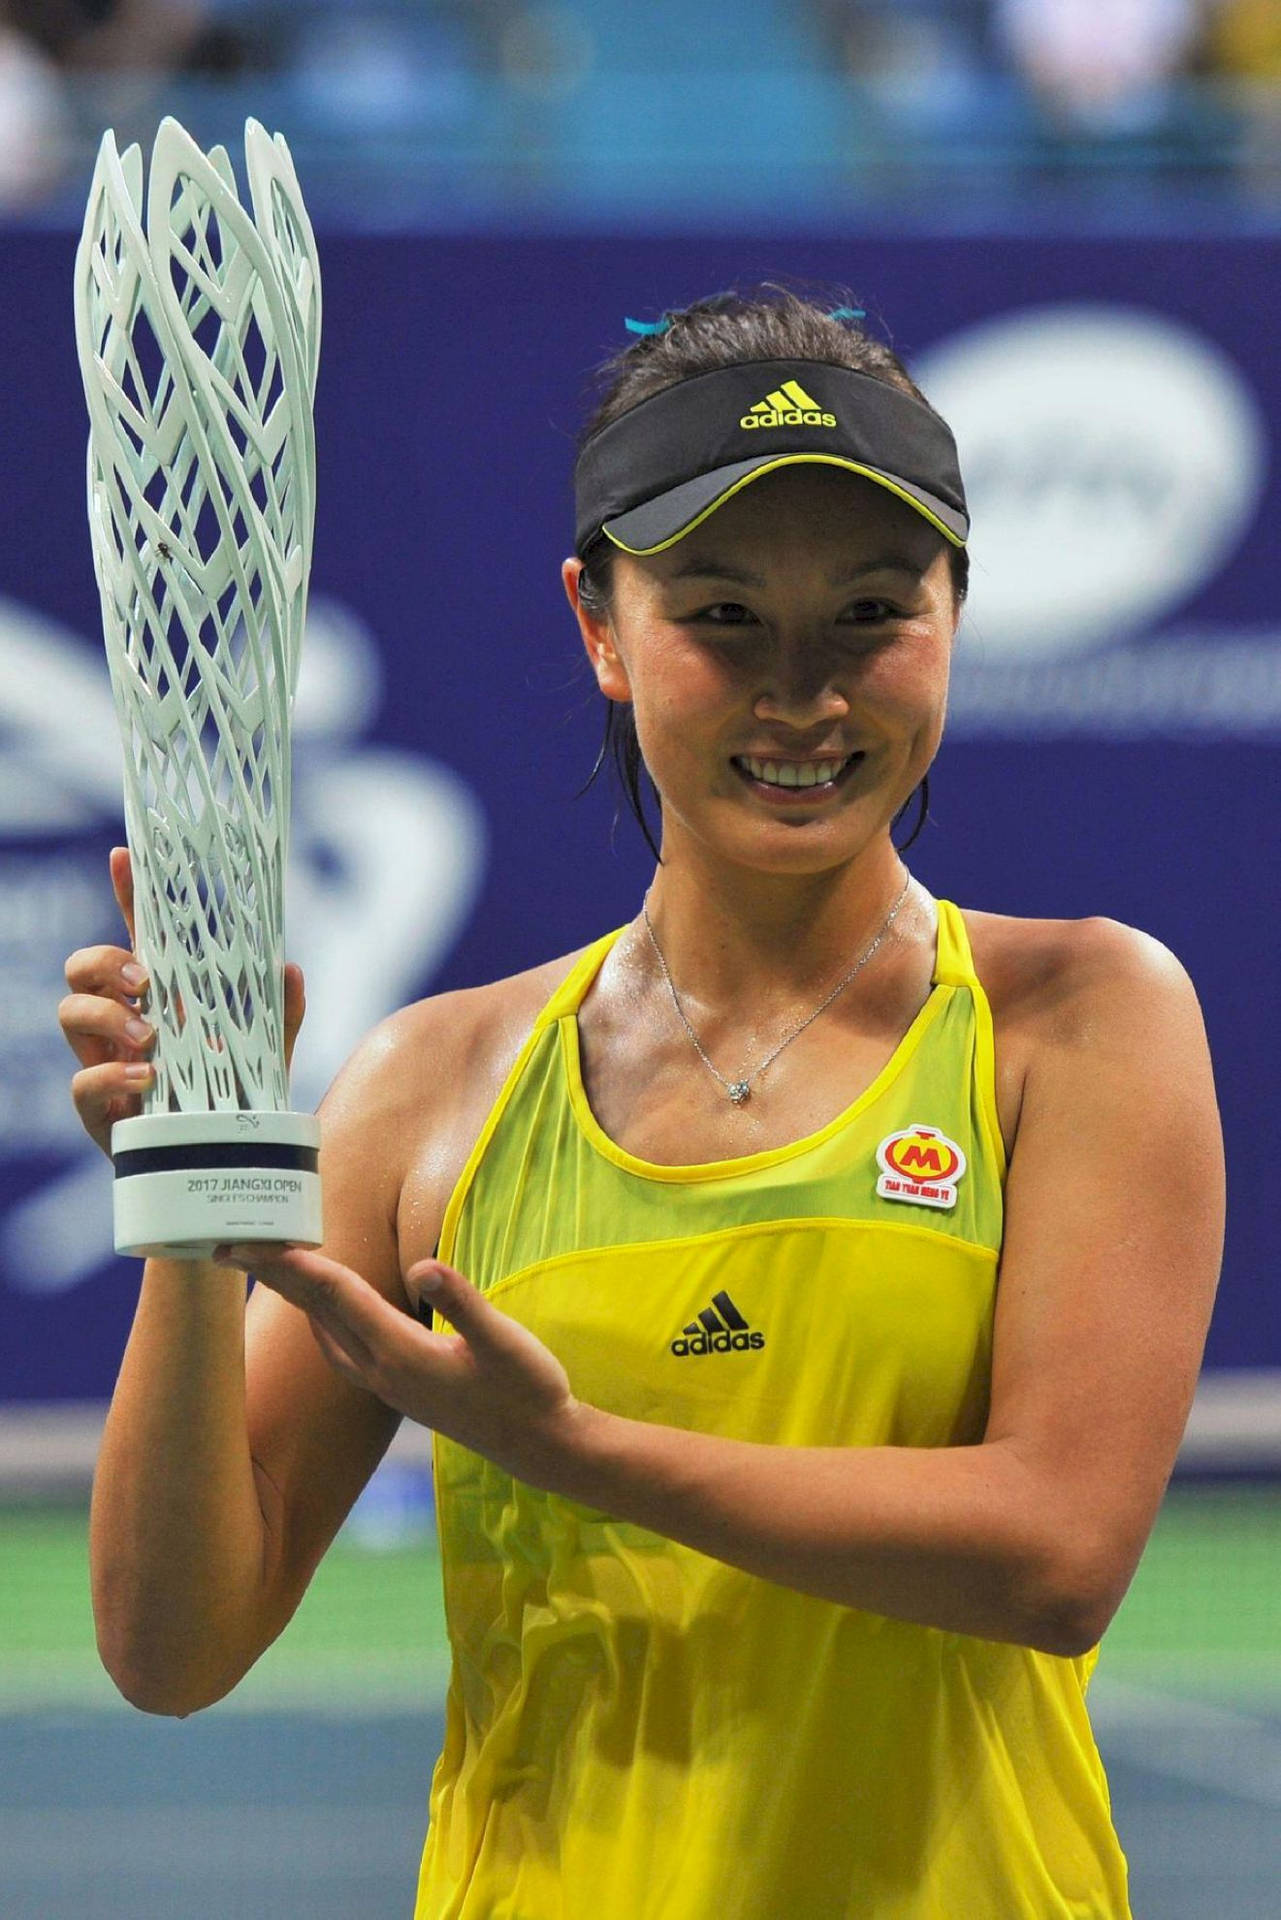 Shuaipeng Trionfa Trionfalmente Con Il Trofeo Di Tennis. Sfondo